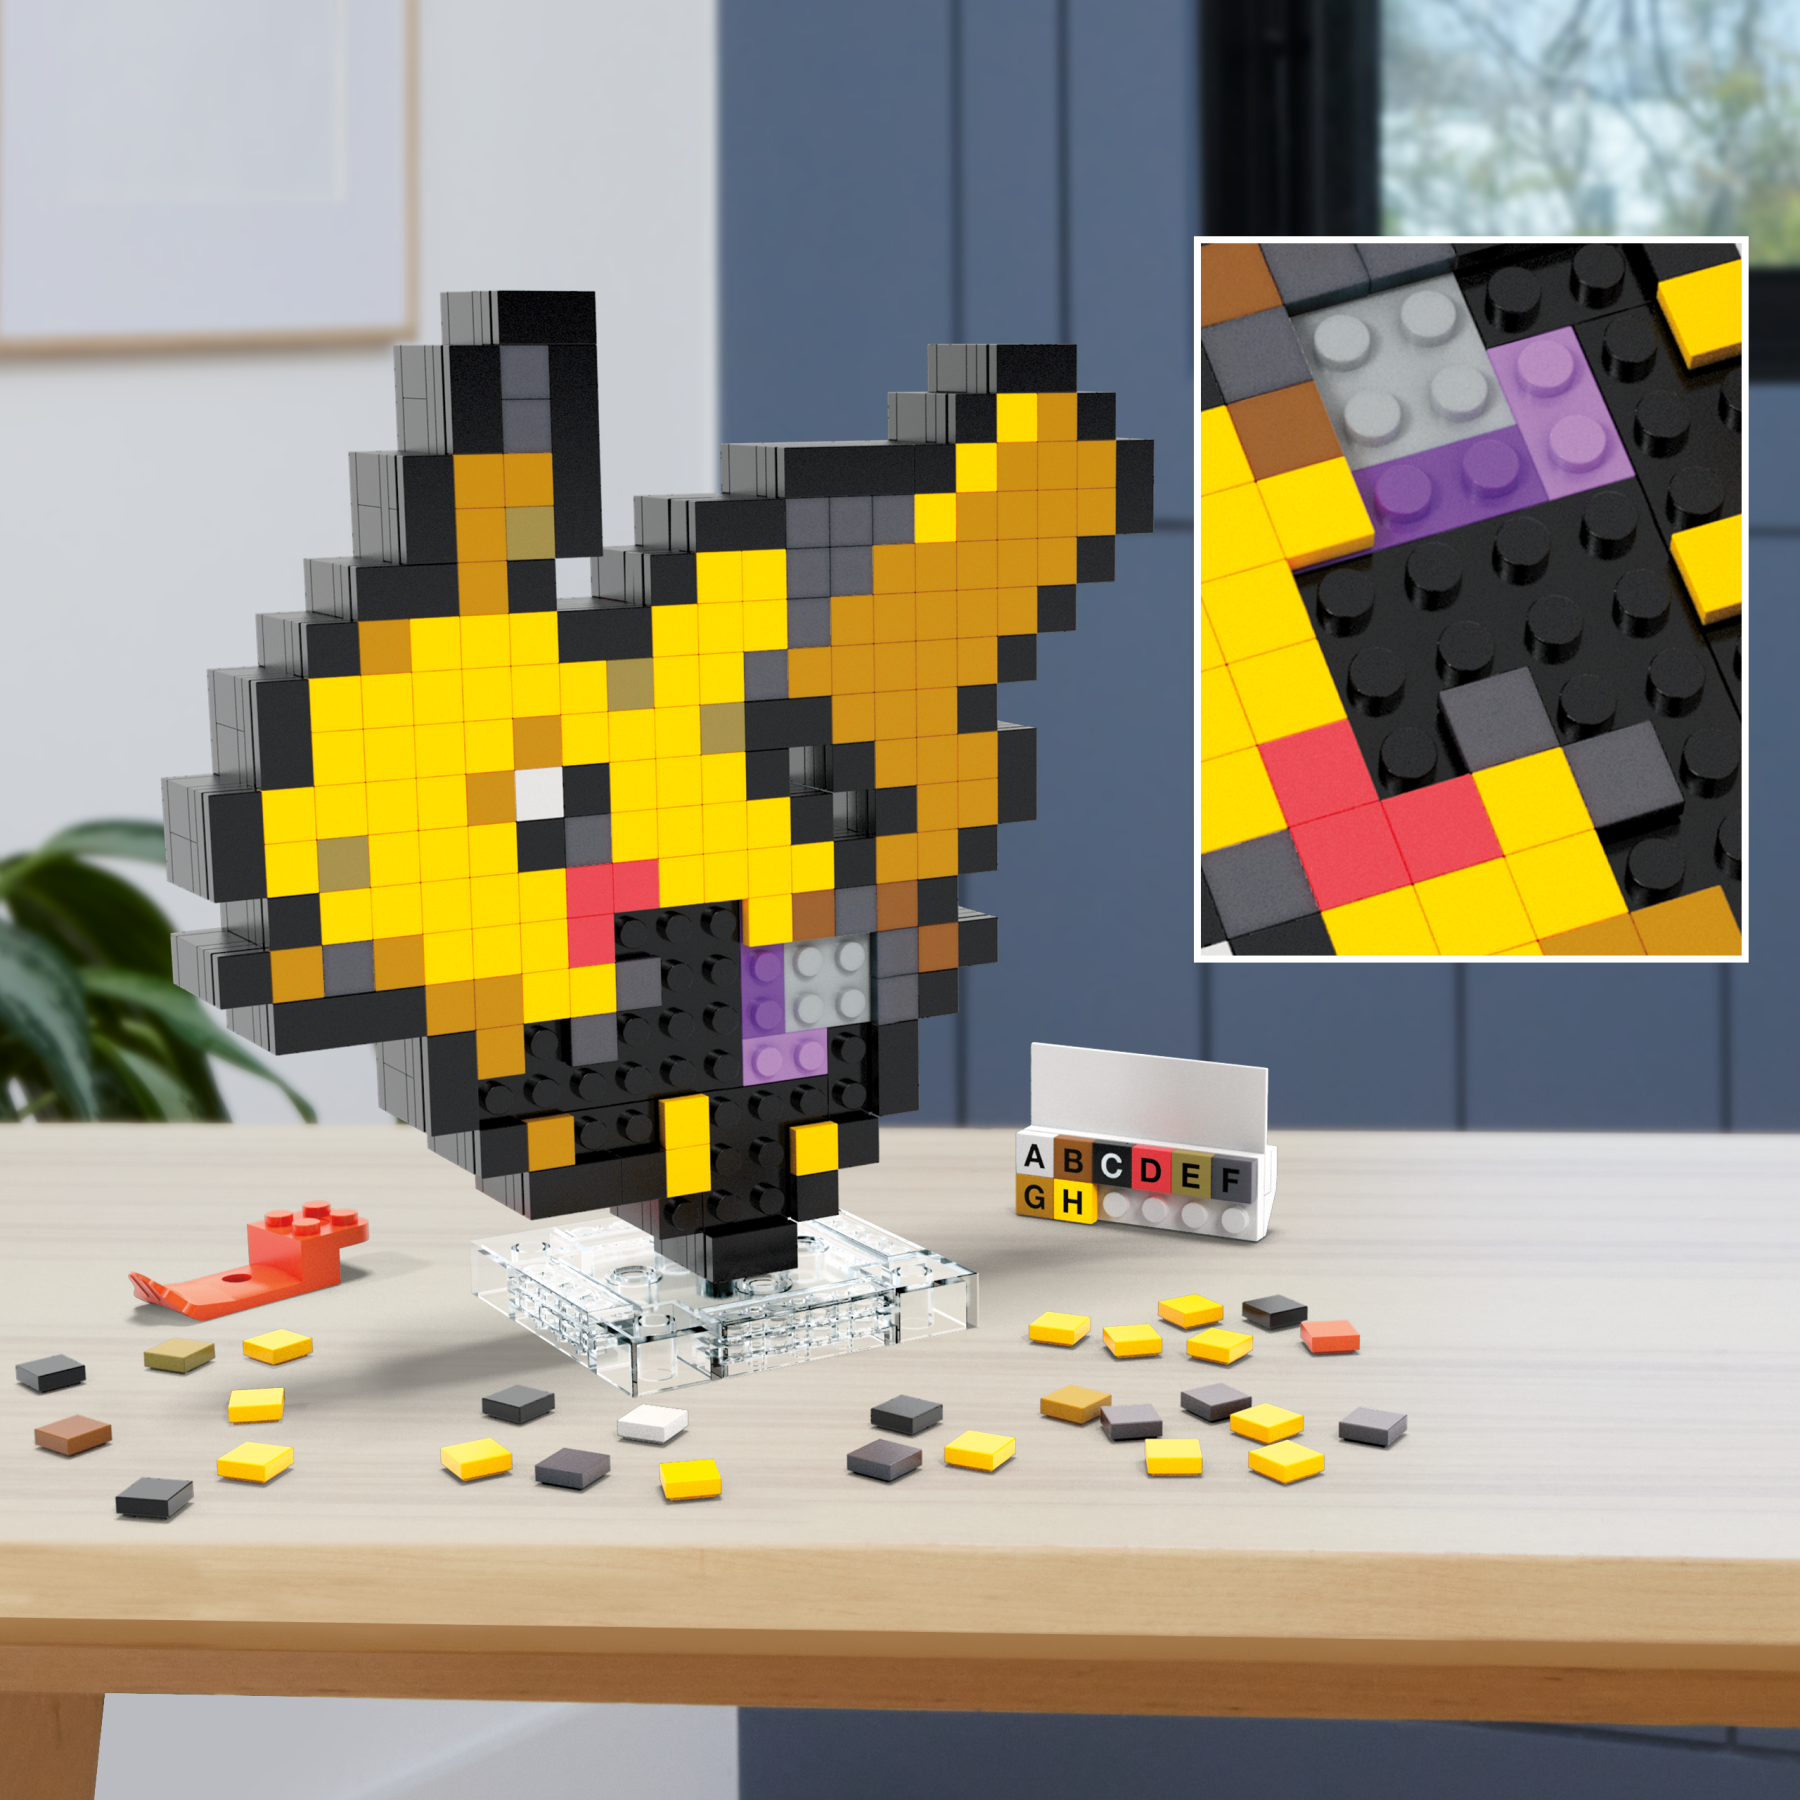 Mega pokémon showcase - pikachu, set in stile retrò pixelato da costruire con 400 pezzi, con base piana per esporlo e incisione sul retro per appenderlo - MEGA BLOKS, POKEMON